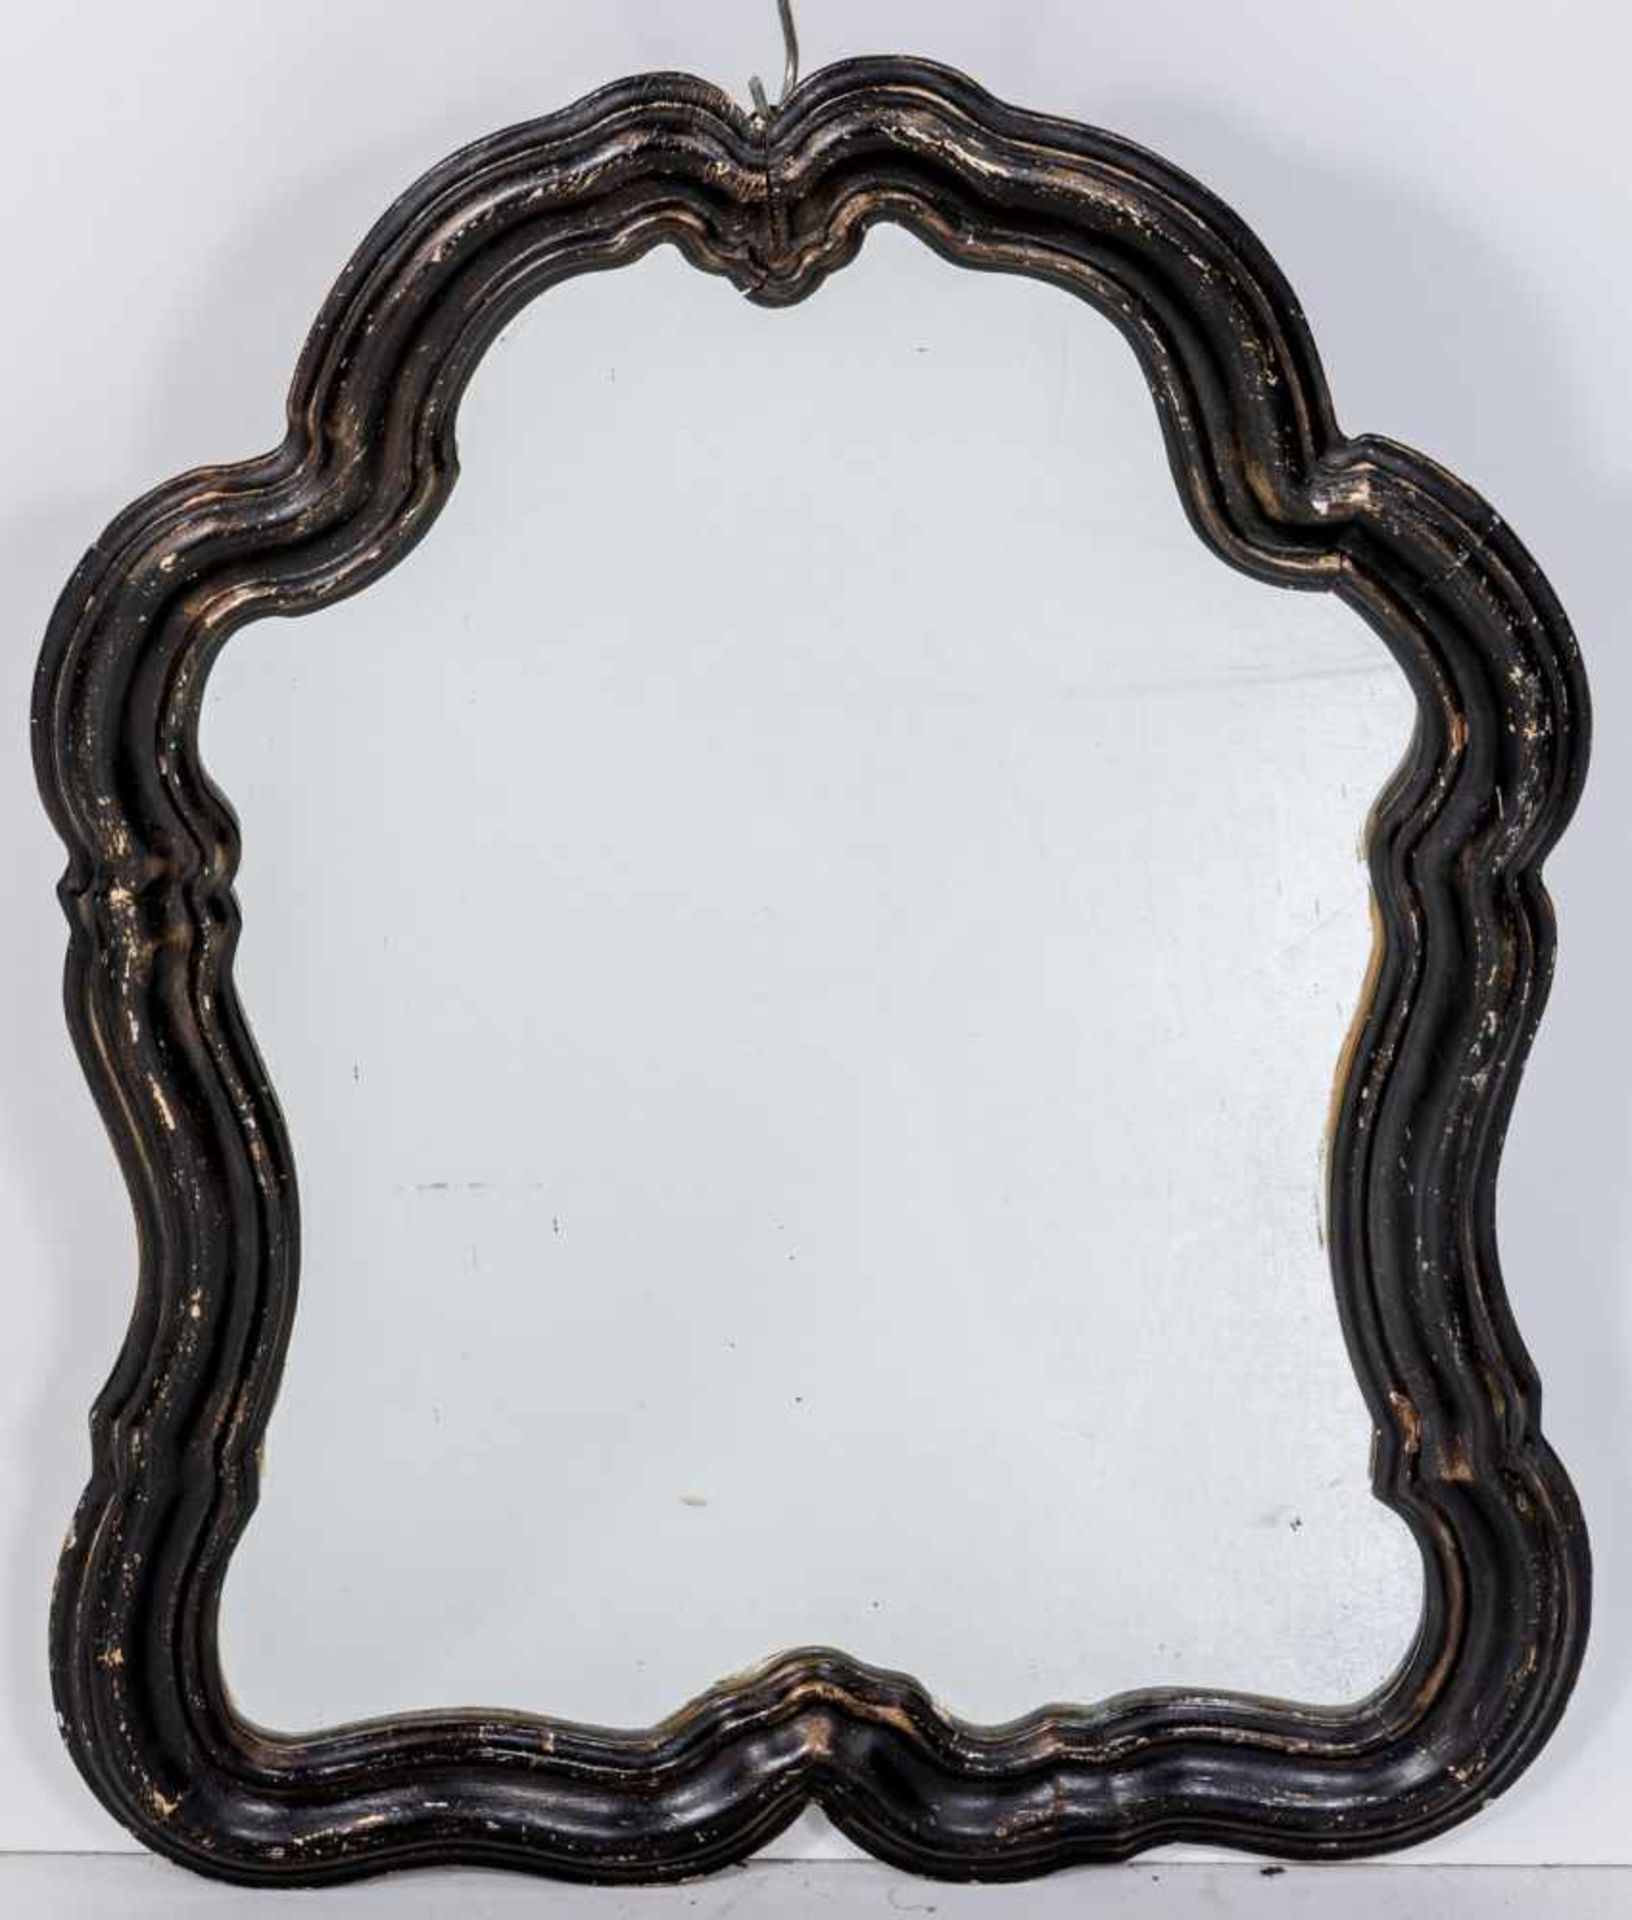 KartuschenspiegelRokokoform. Holz. Schwarze Farbfassung über Goldbronze. 71×56 cm.(58030)